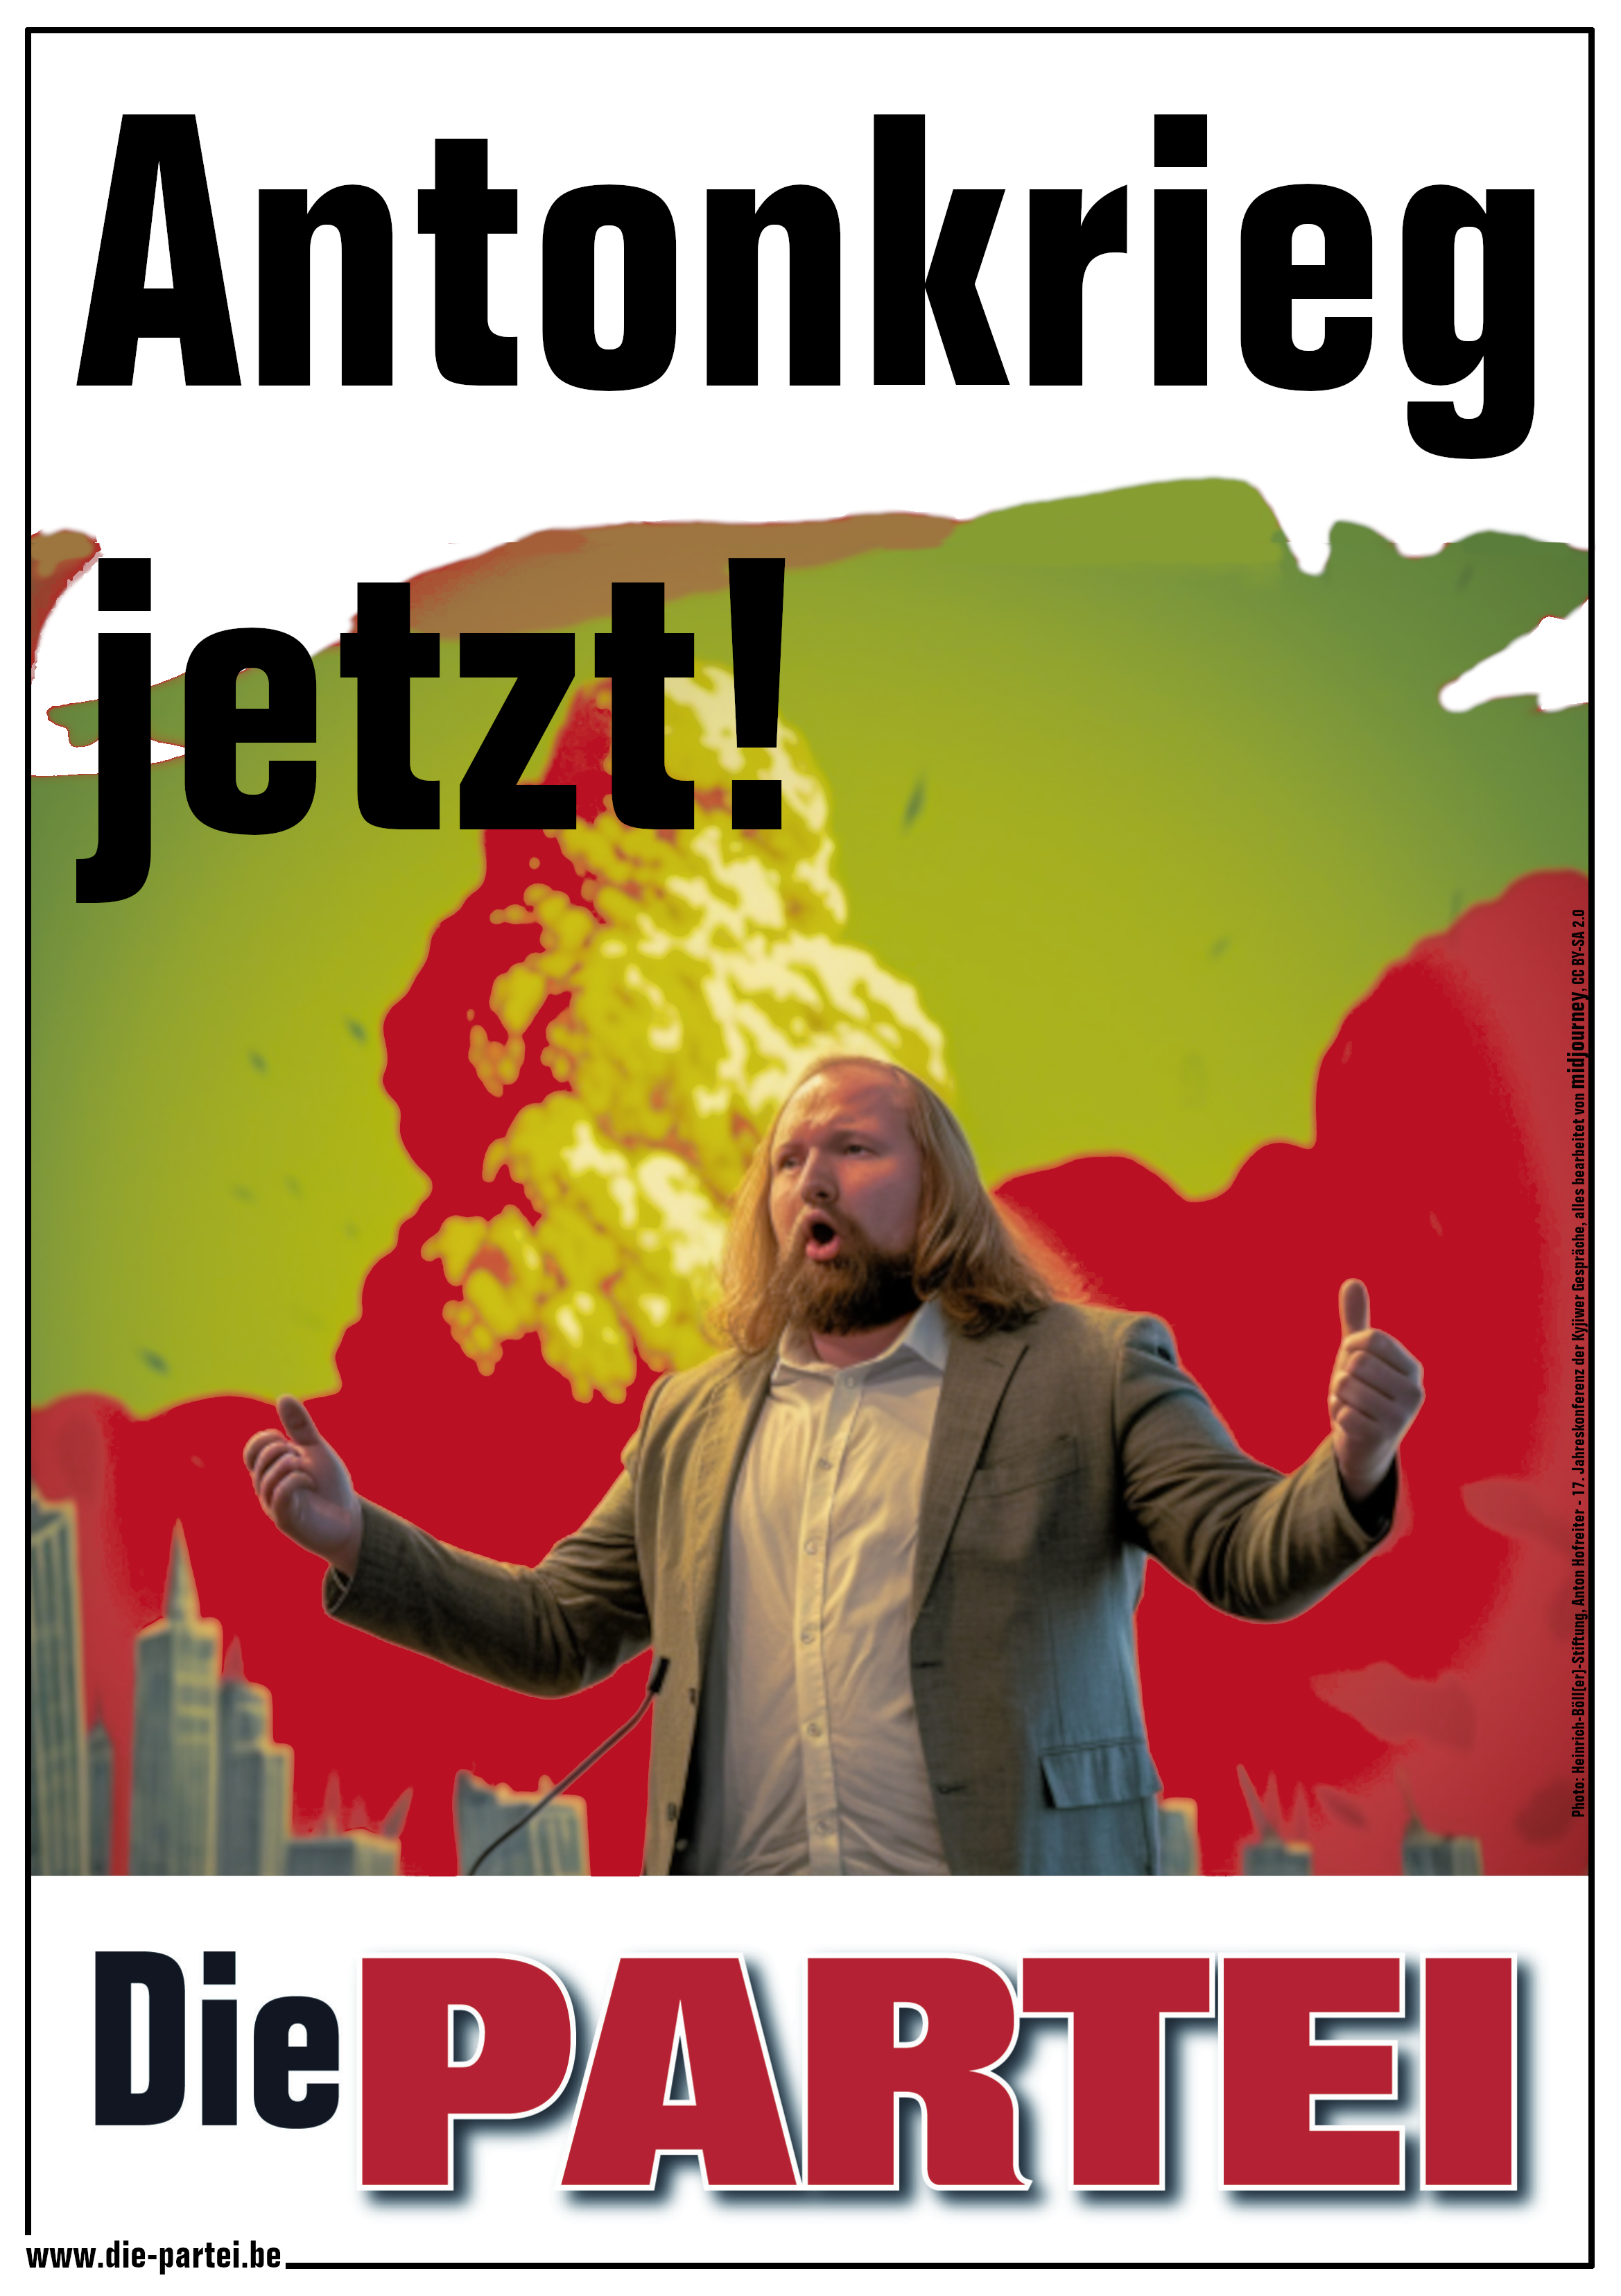 Anton Hofreiter steht mit gebieterisch ausgebreiteten Armen vor einem stilisierten Atompilz unter der Überschrift "Antonkrieg jetzt". Darunter ist das Logo der Partei Die PARTEI zu sehen.